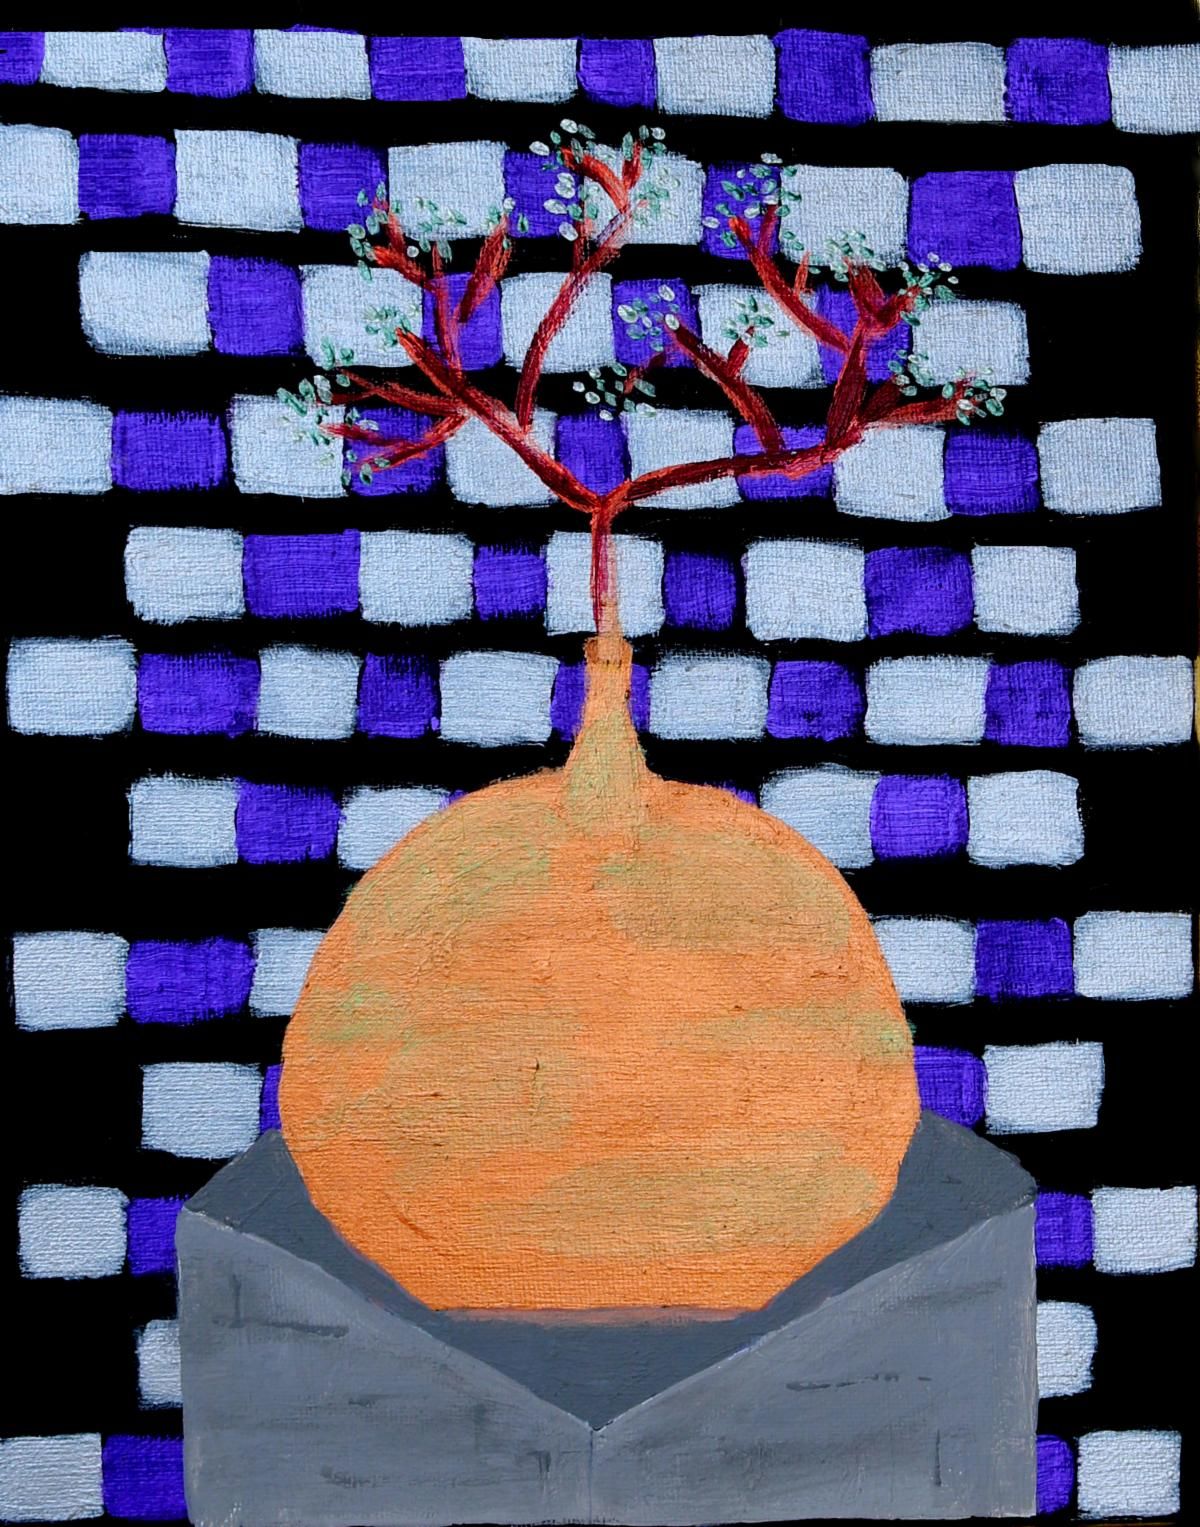 "Tree in a Copper Pot" by Deborah Boyd